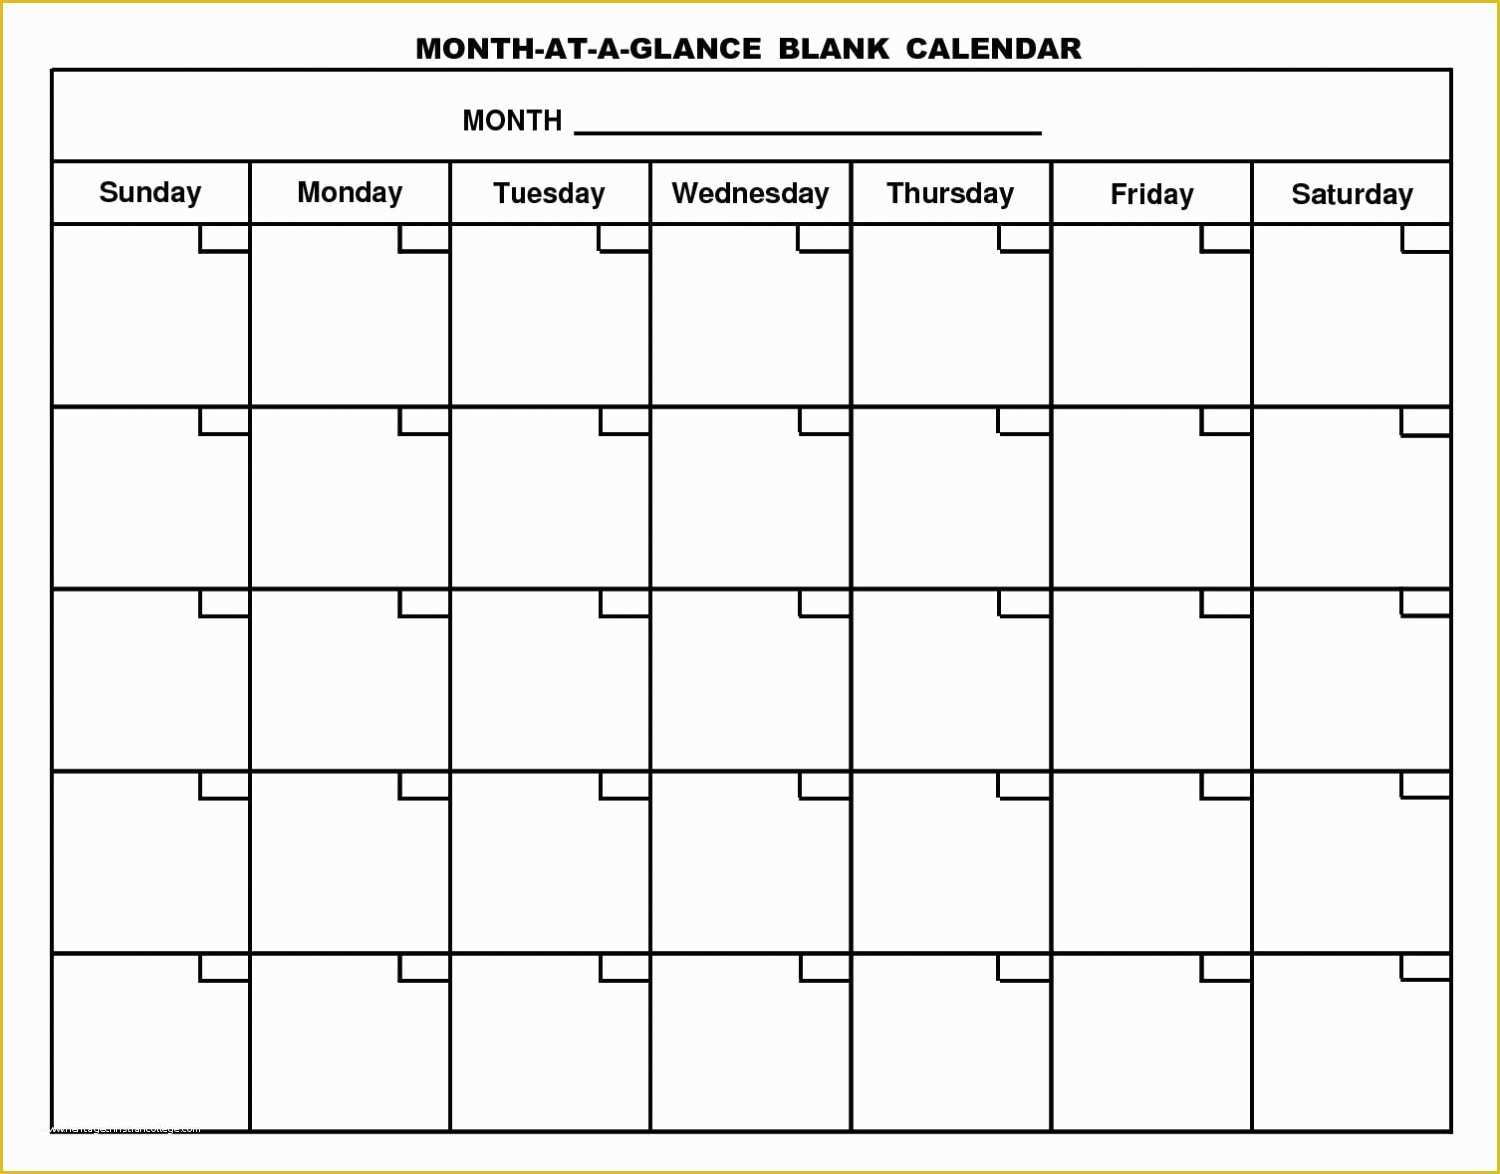 Free 12 Month Calendar Template Of Blank 12 Month Calendar Template 2017